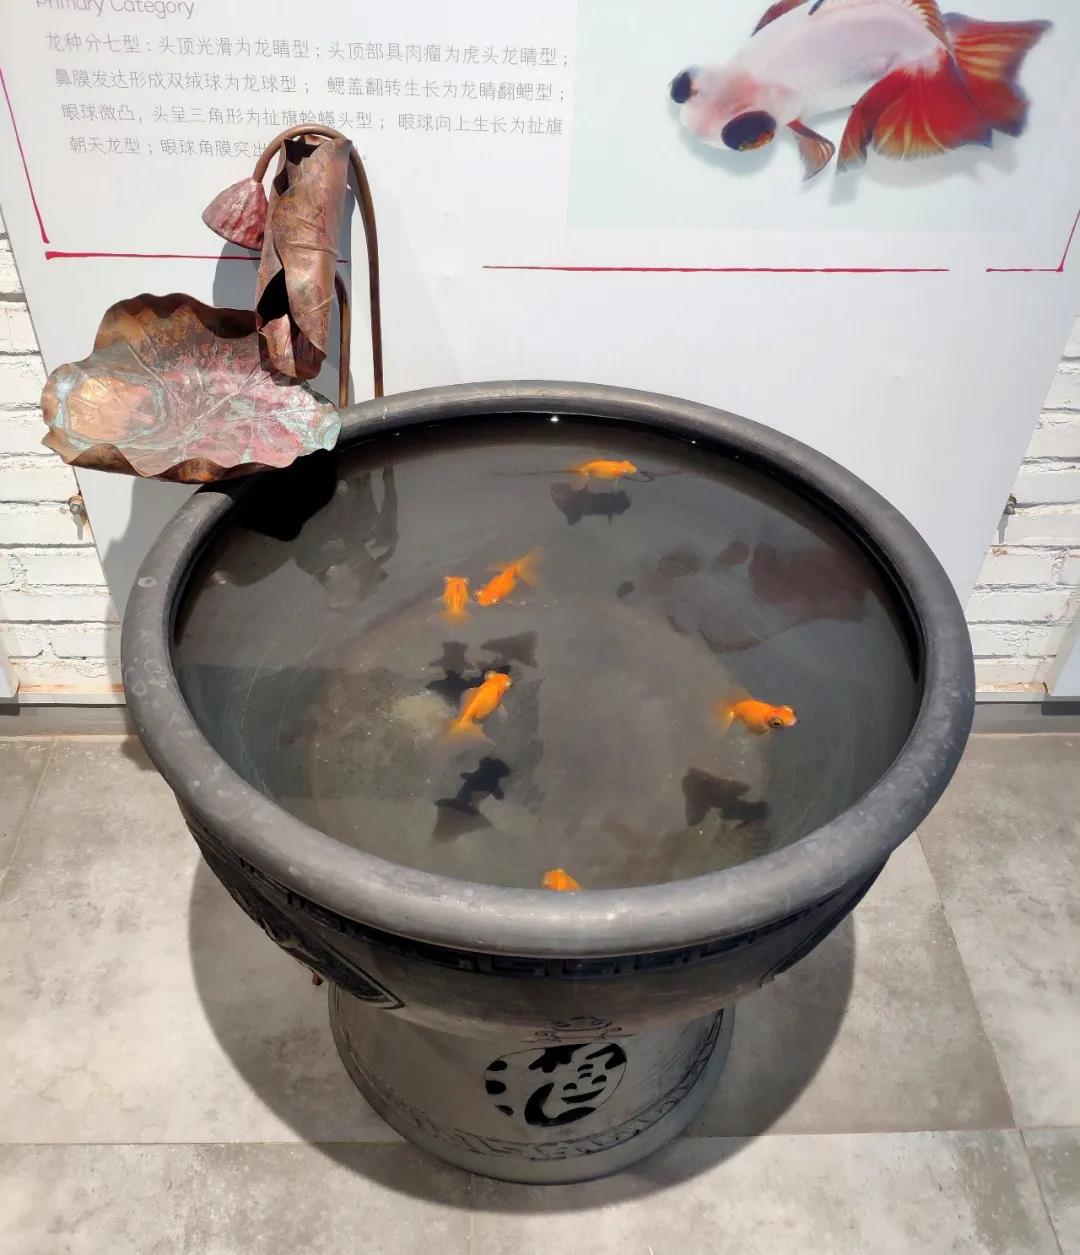 古法养鱼 | 老北京鱼盆的诸多讲究!